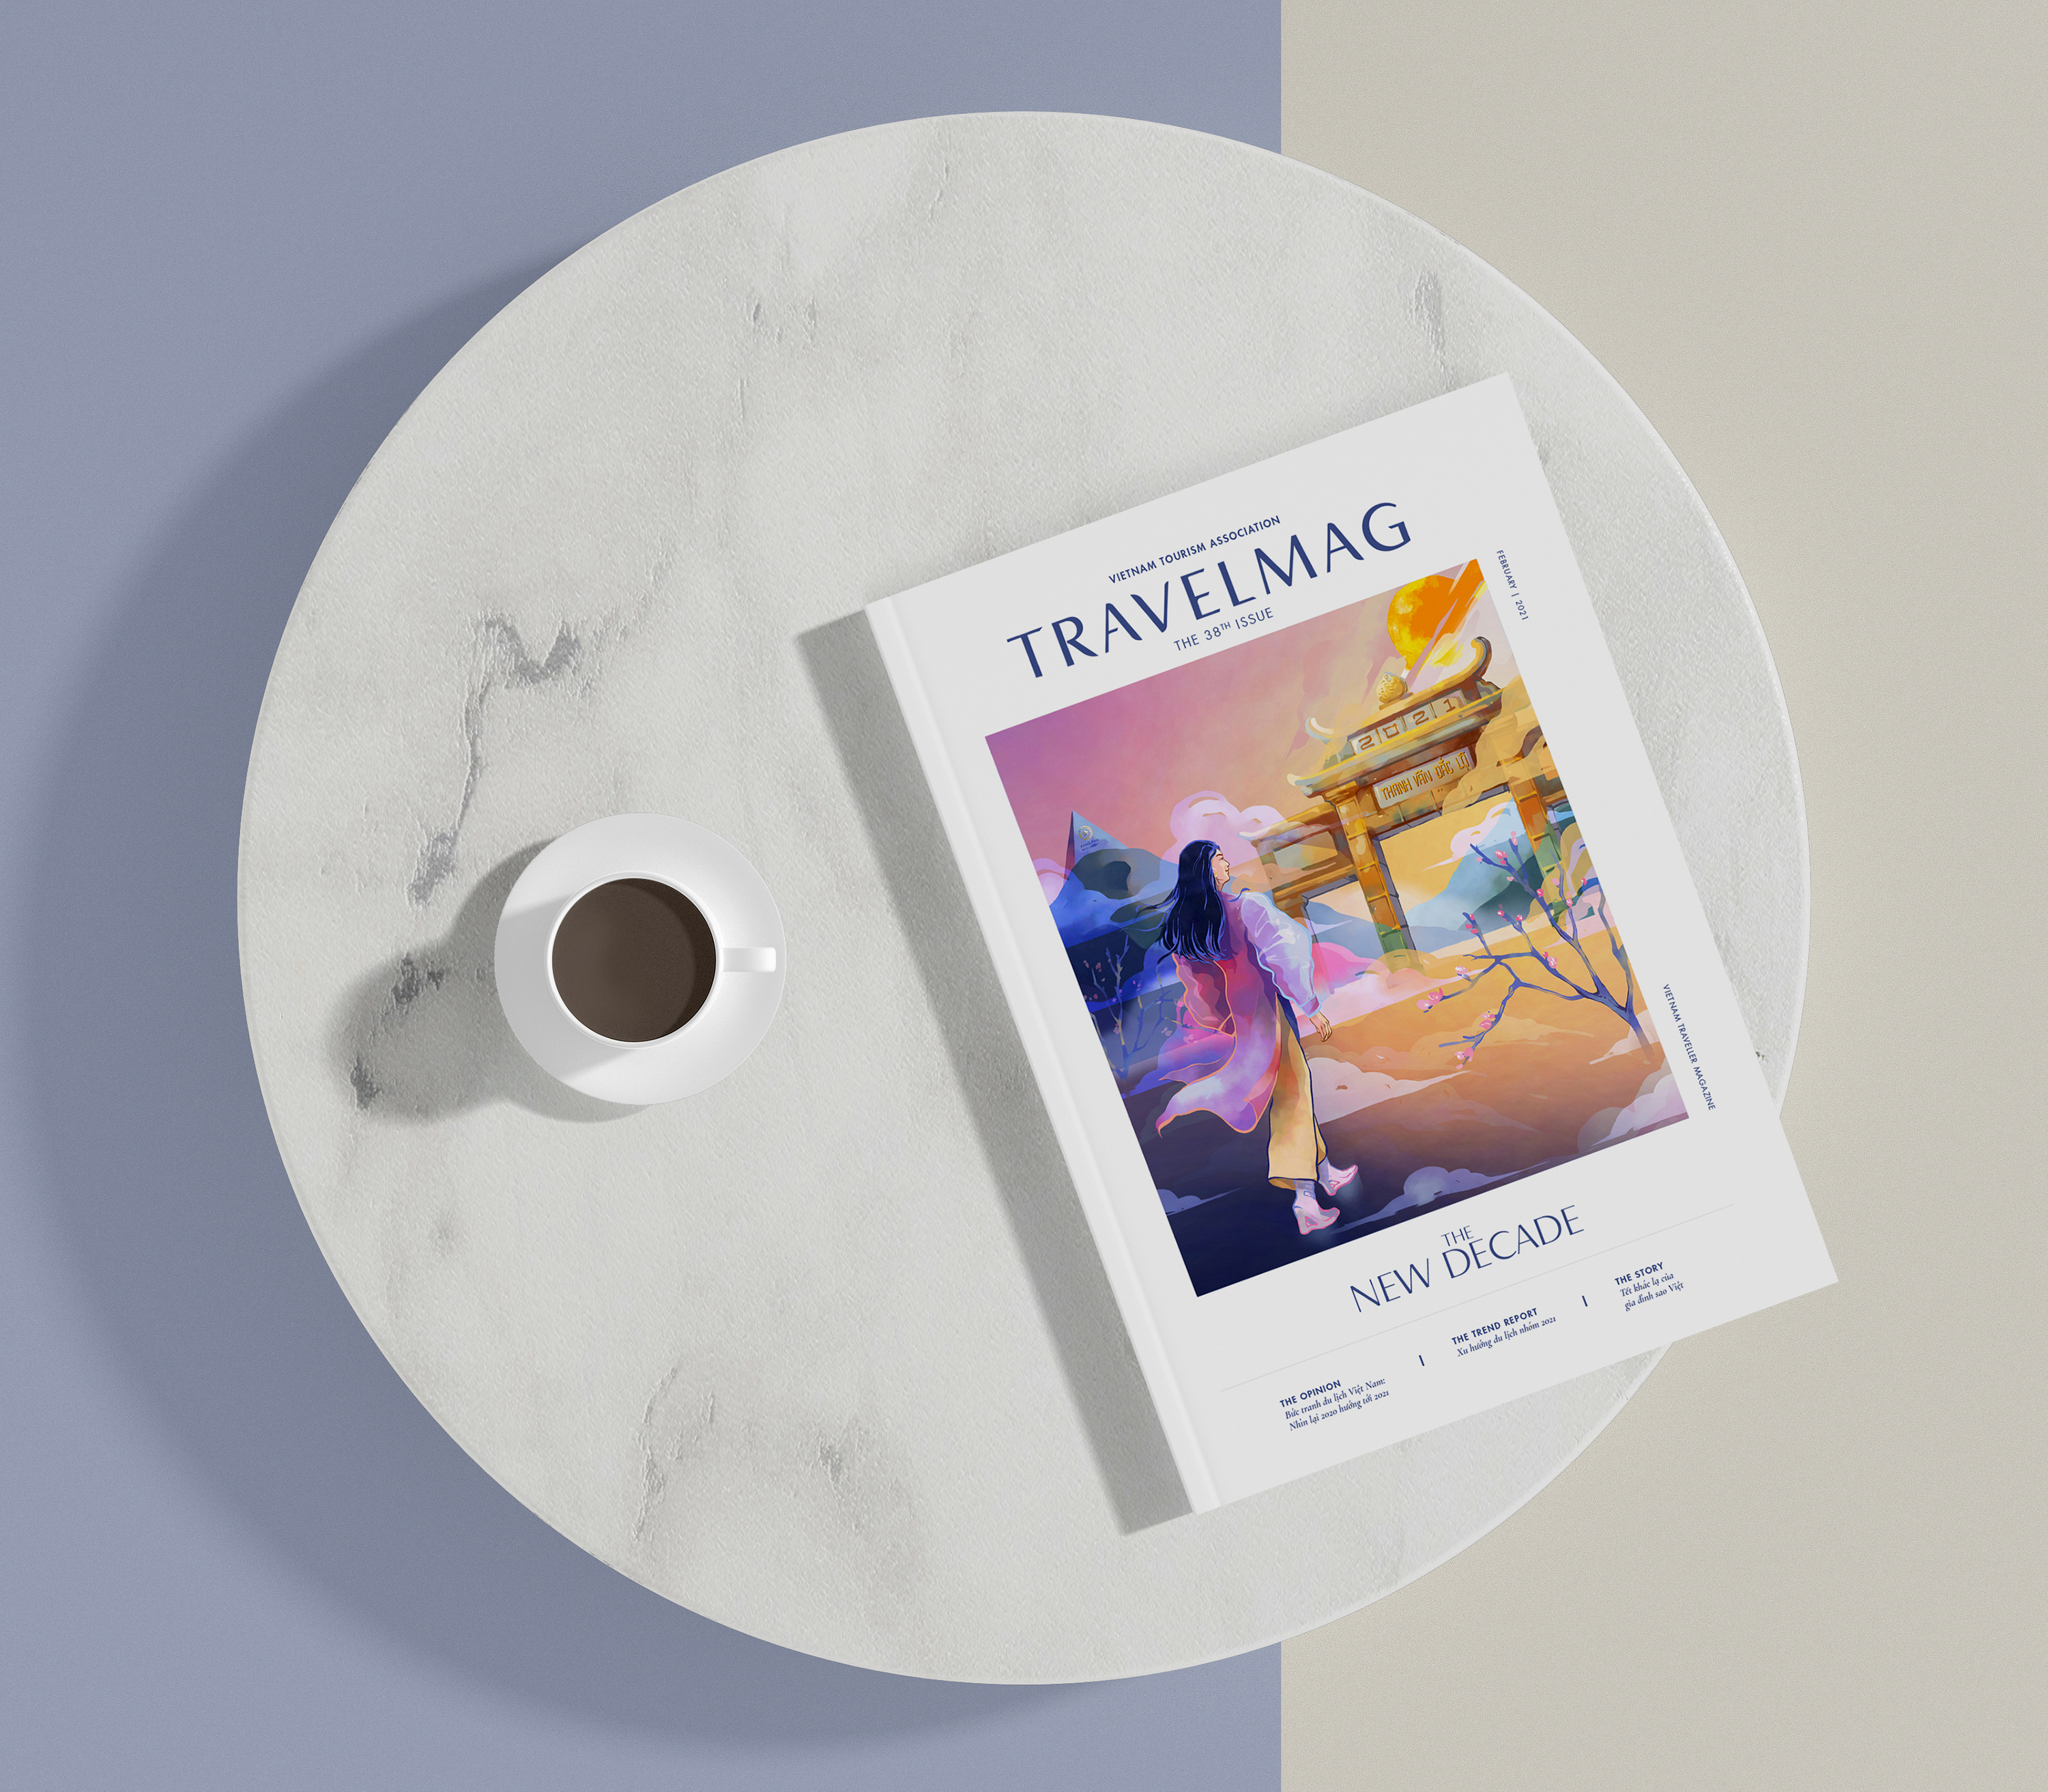 Tạp chí TravelMag - Vietnam Traveller số 38